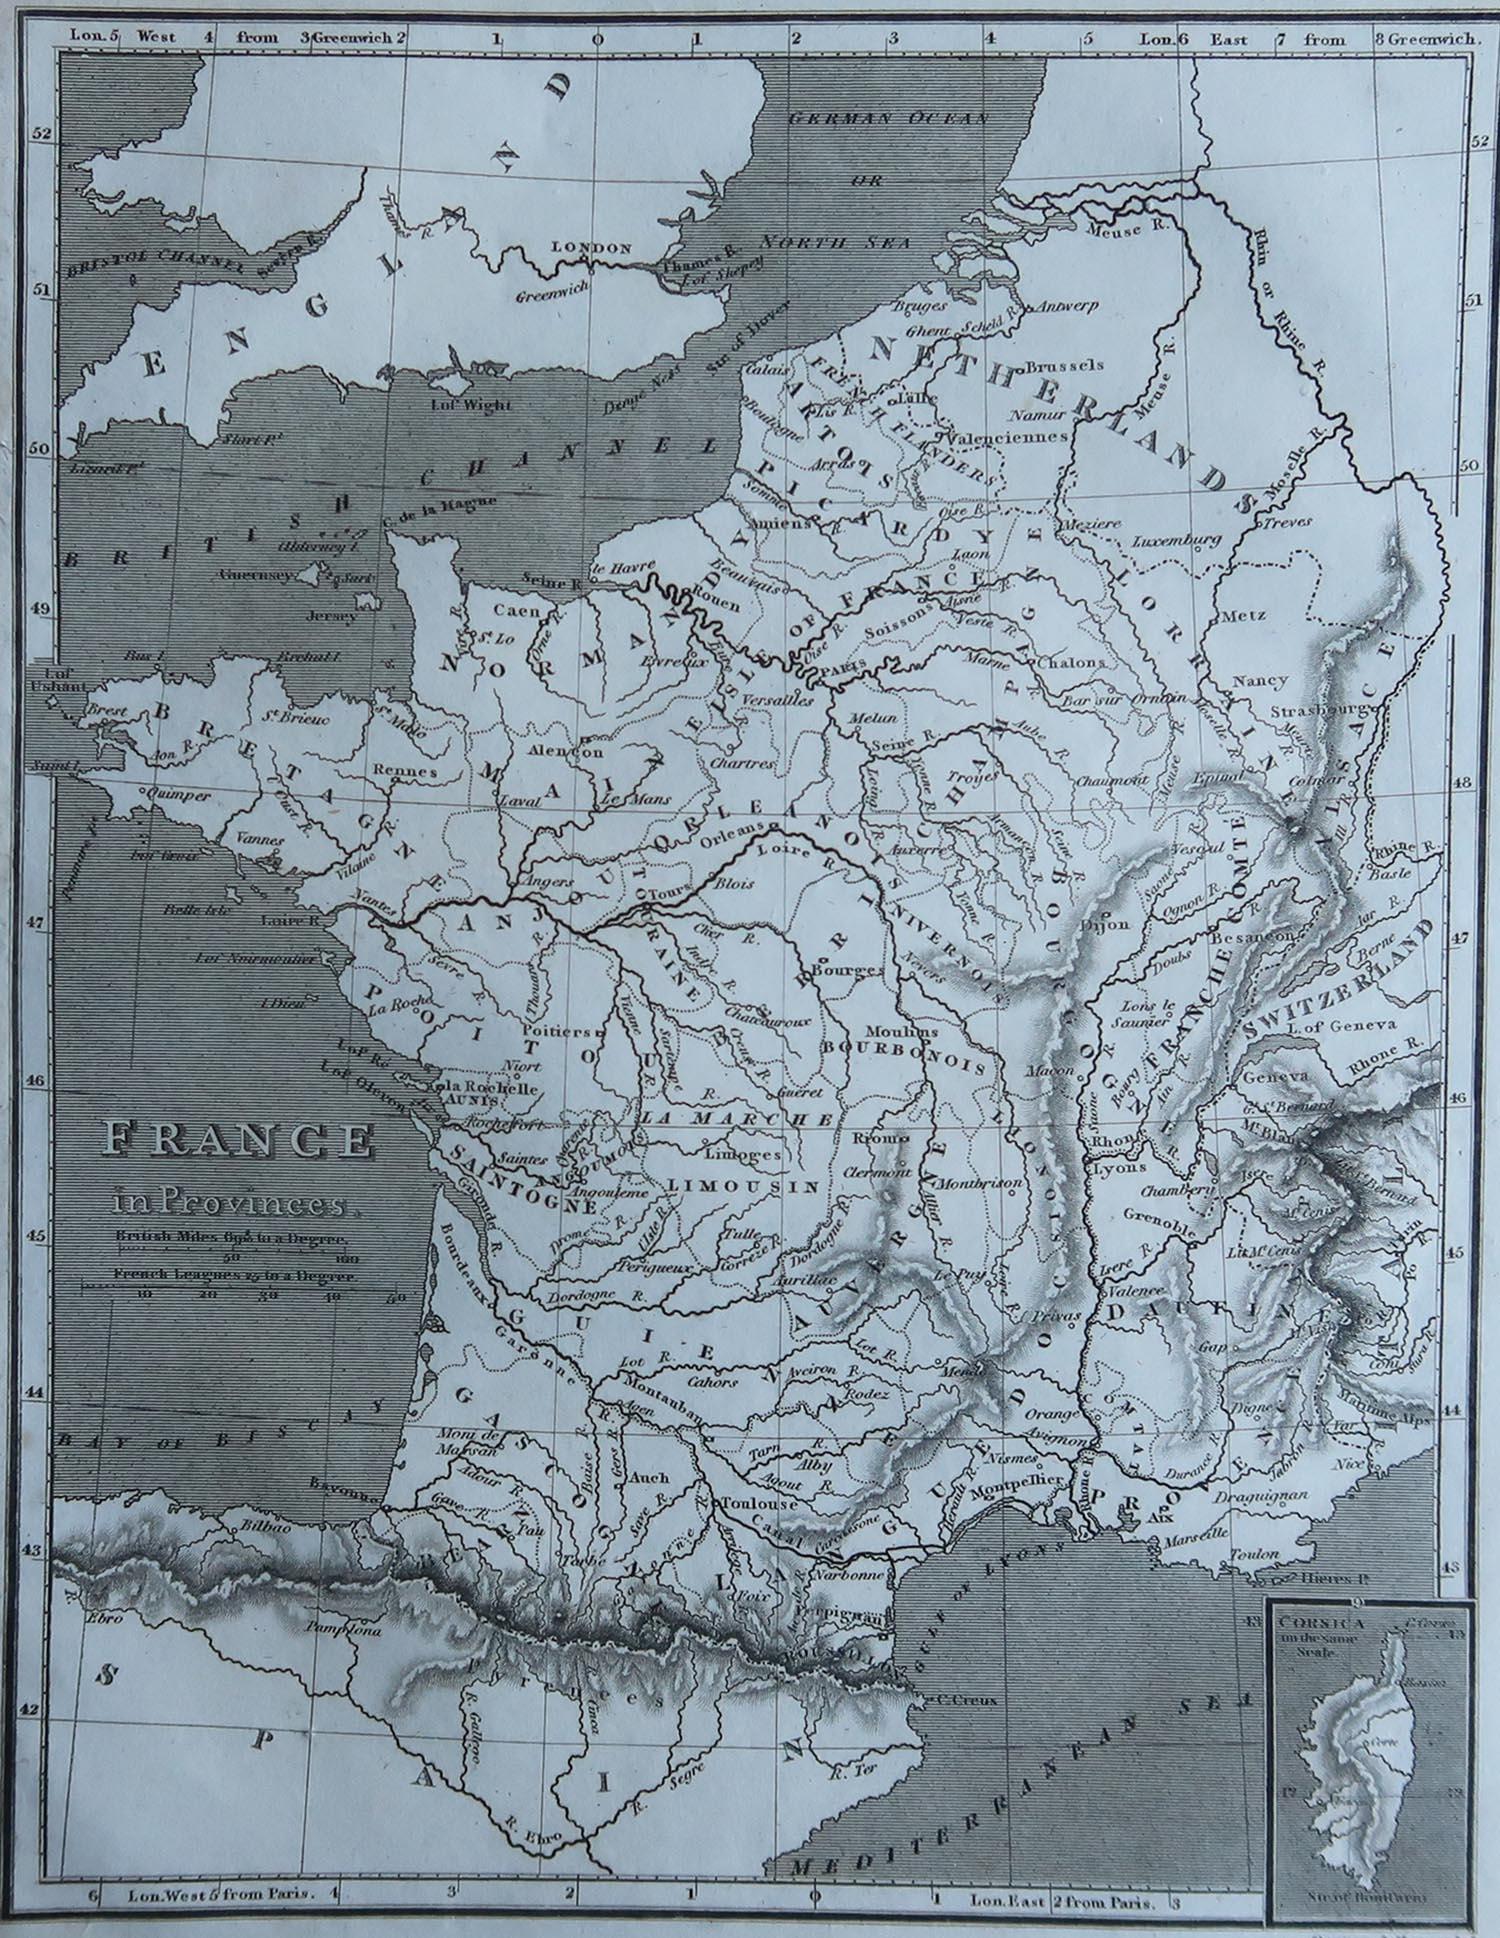 Grande carte de France

Gravure sur cuivre de Cooper

Publié par Sherwood, Neely & Jones.

Daté de 1809

Non encadré.